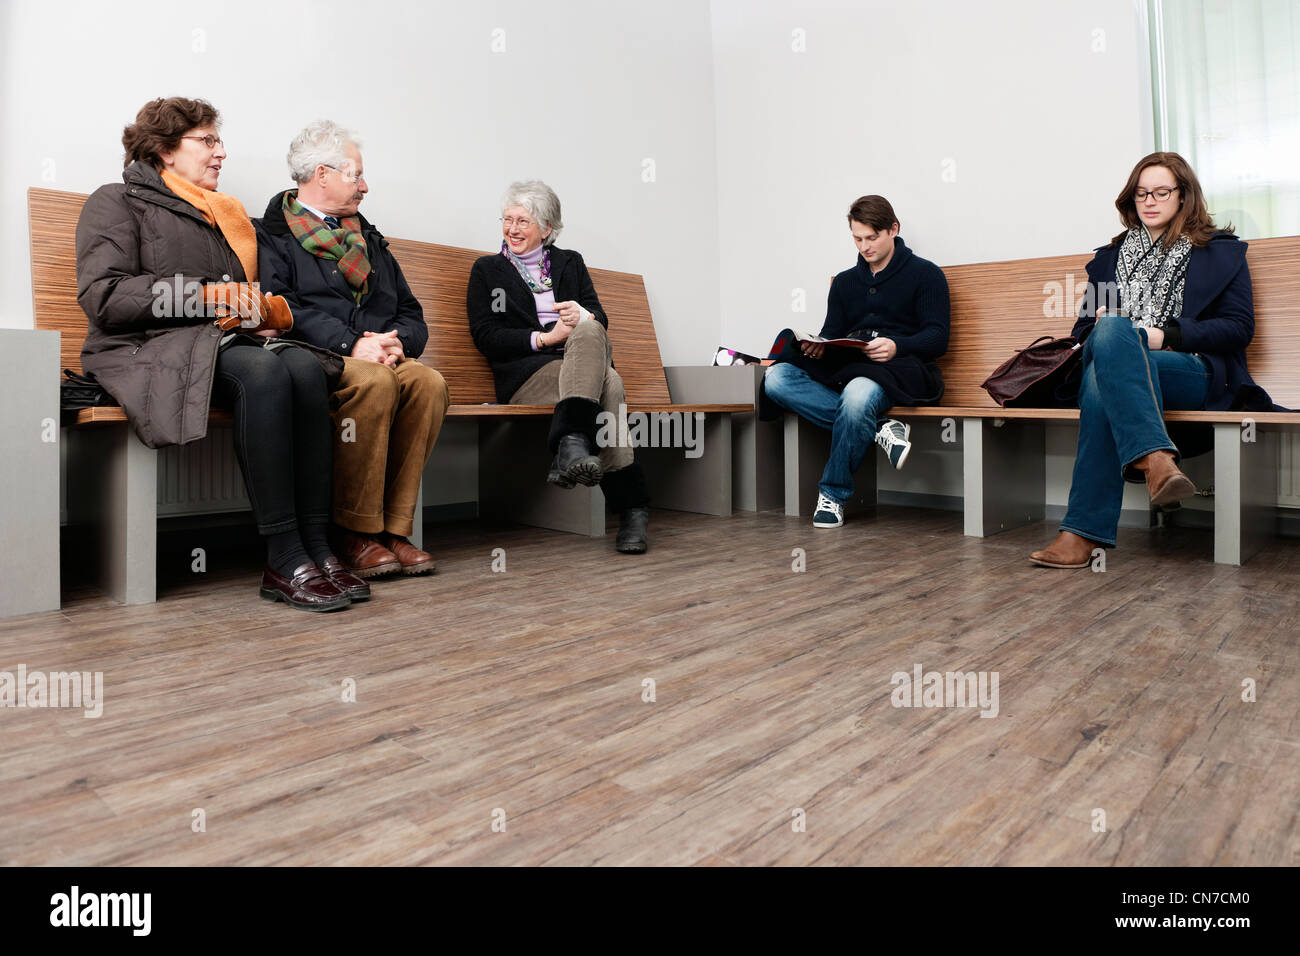 Plusieurs personnes de tous les âges assis dans une zone d'attente des hôpitaux bondés Banque D'Images